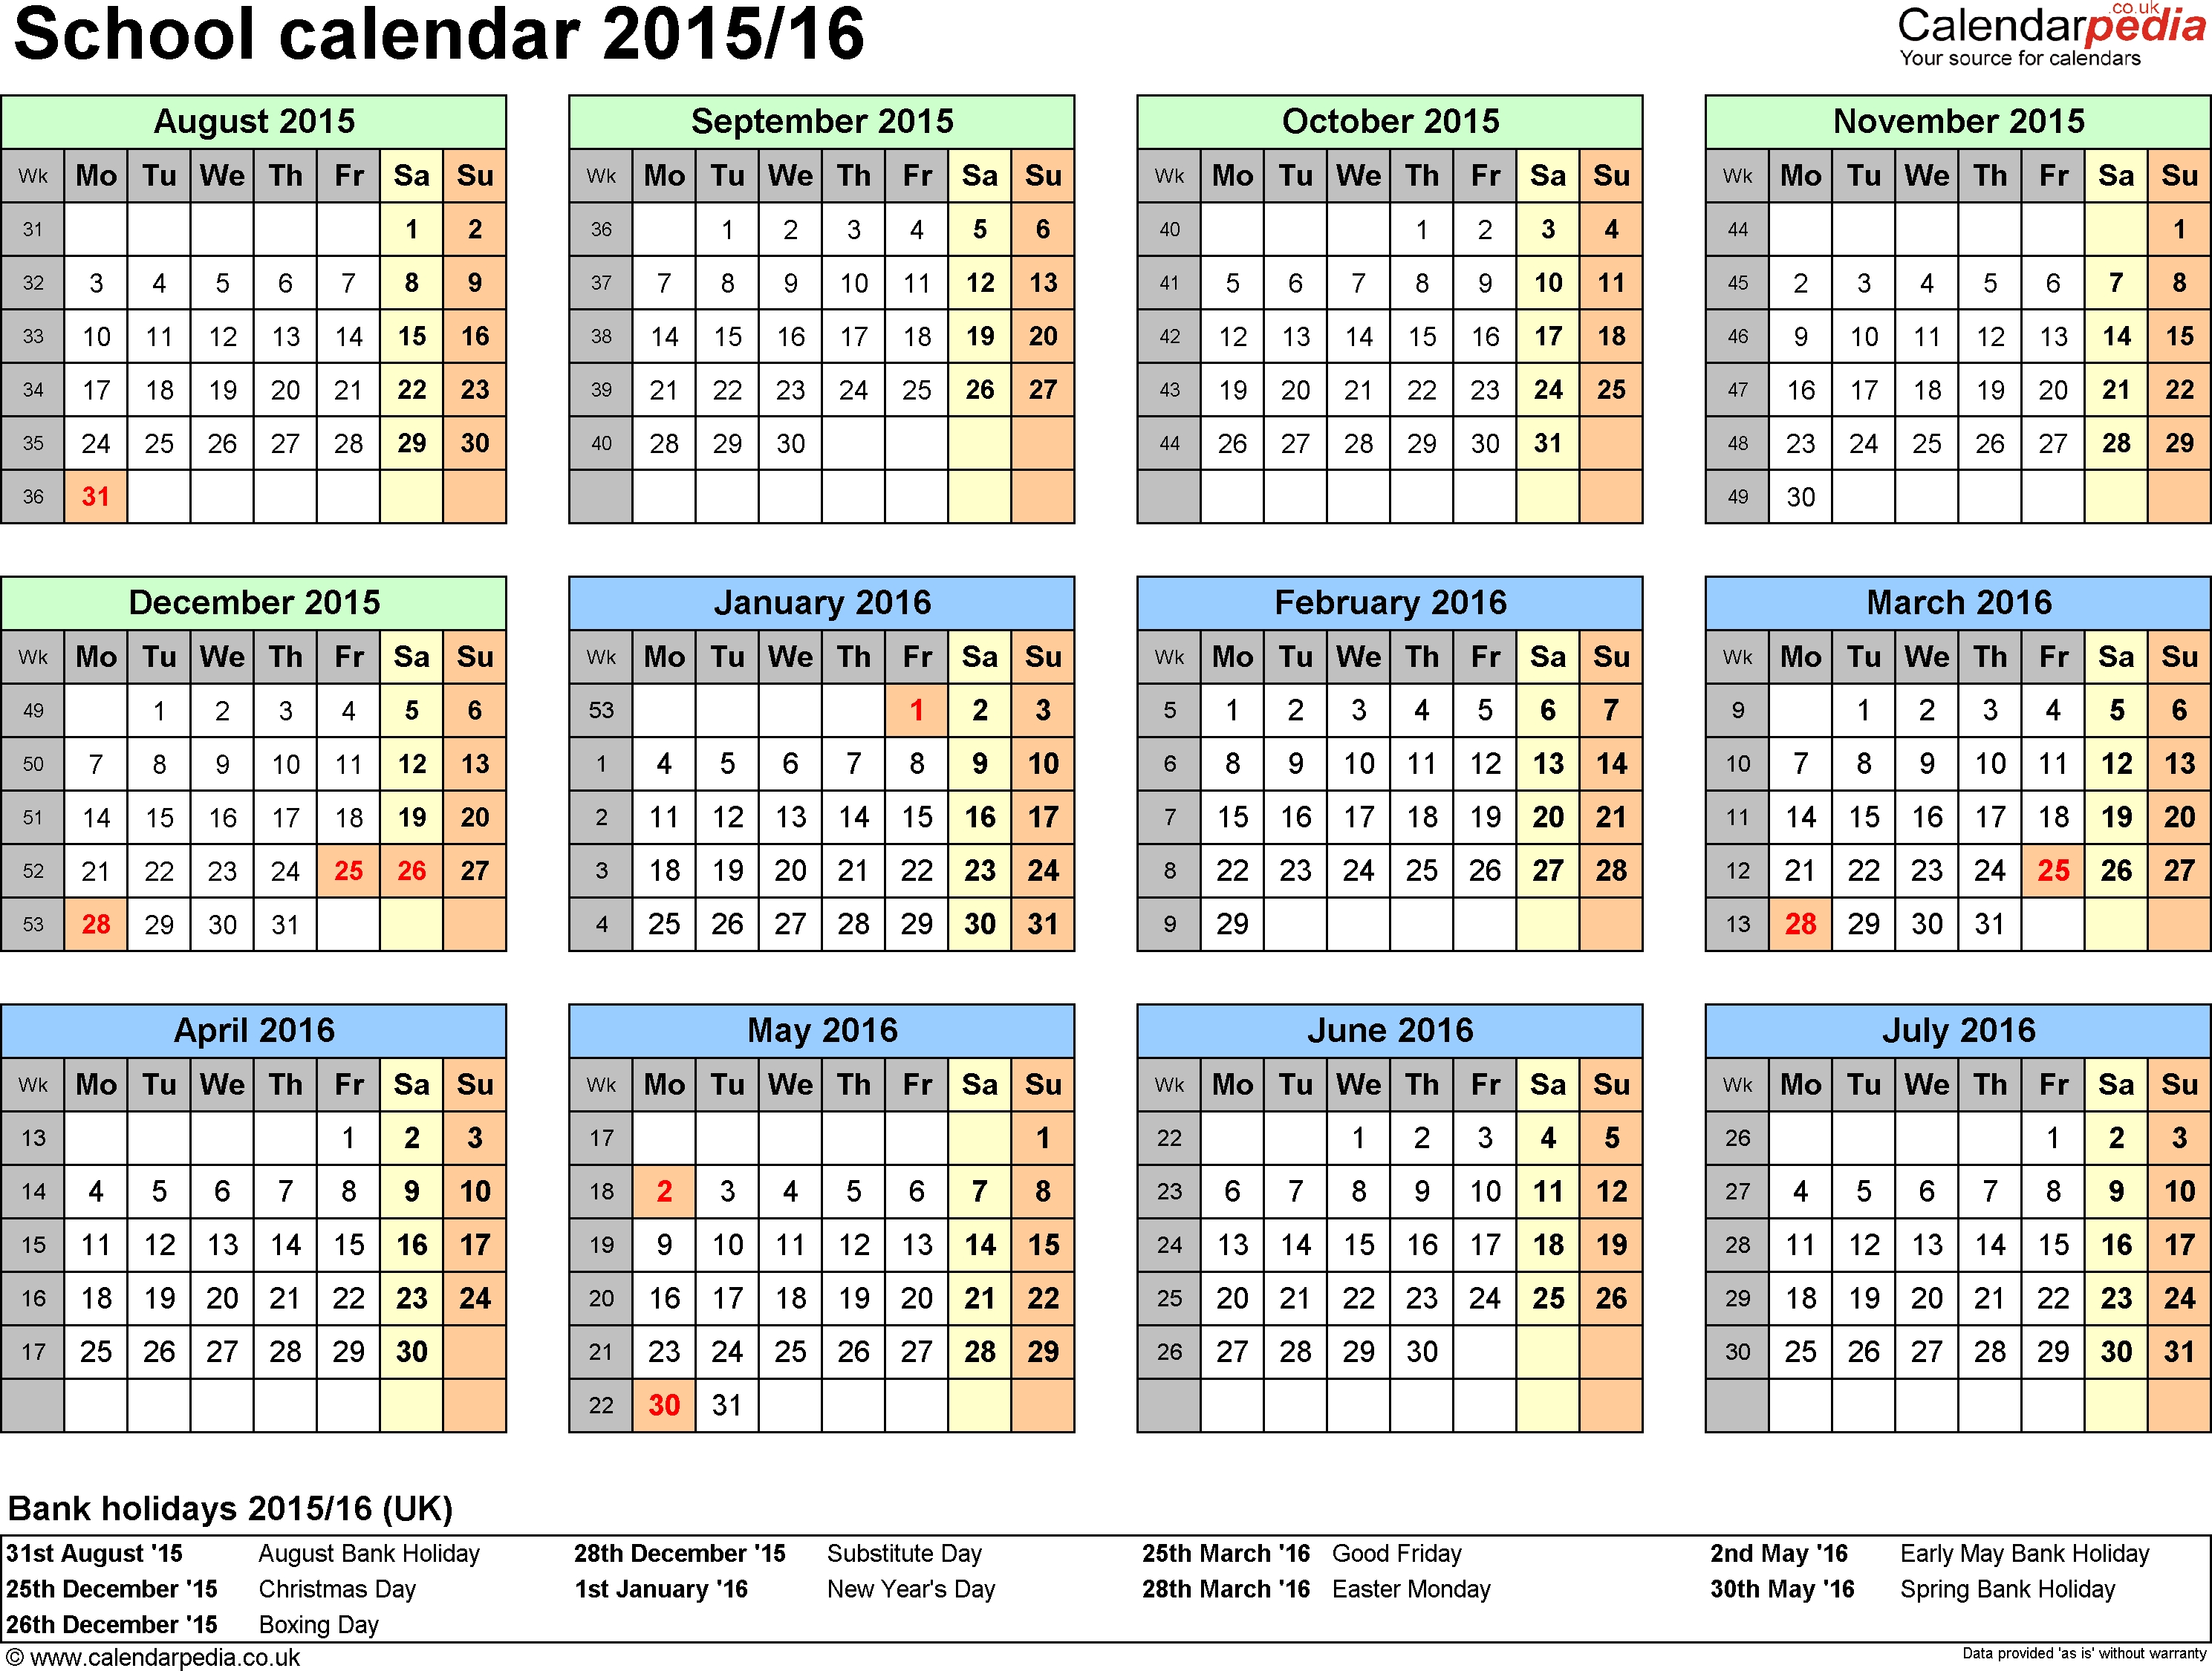 School Calendars 2015/2016 As Free Printable Word Templates pertaining to Free Printable Calendar Numbers For School Year